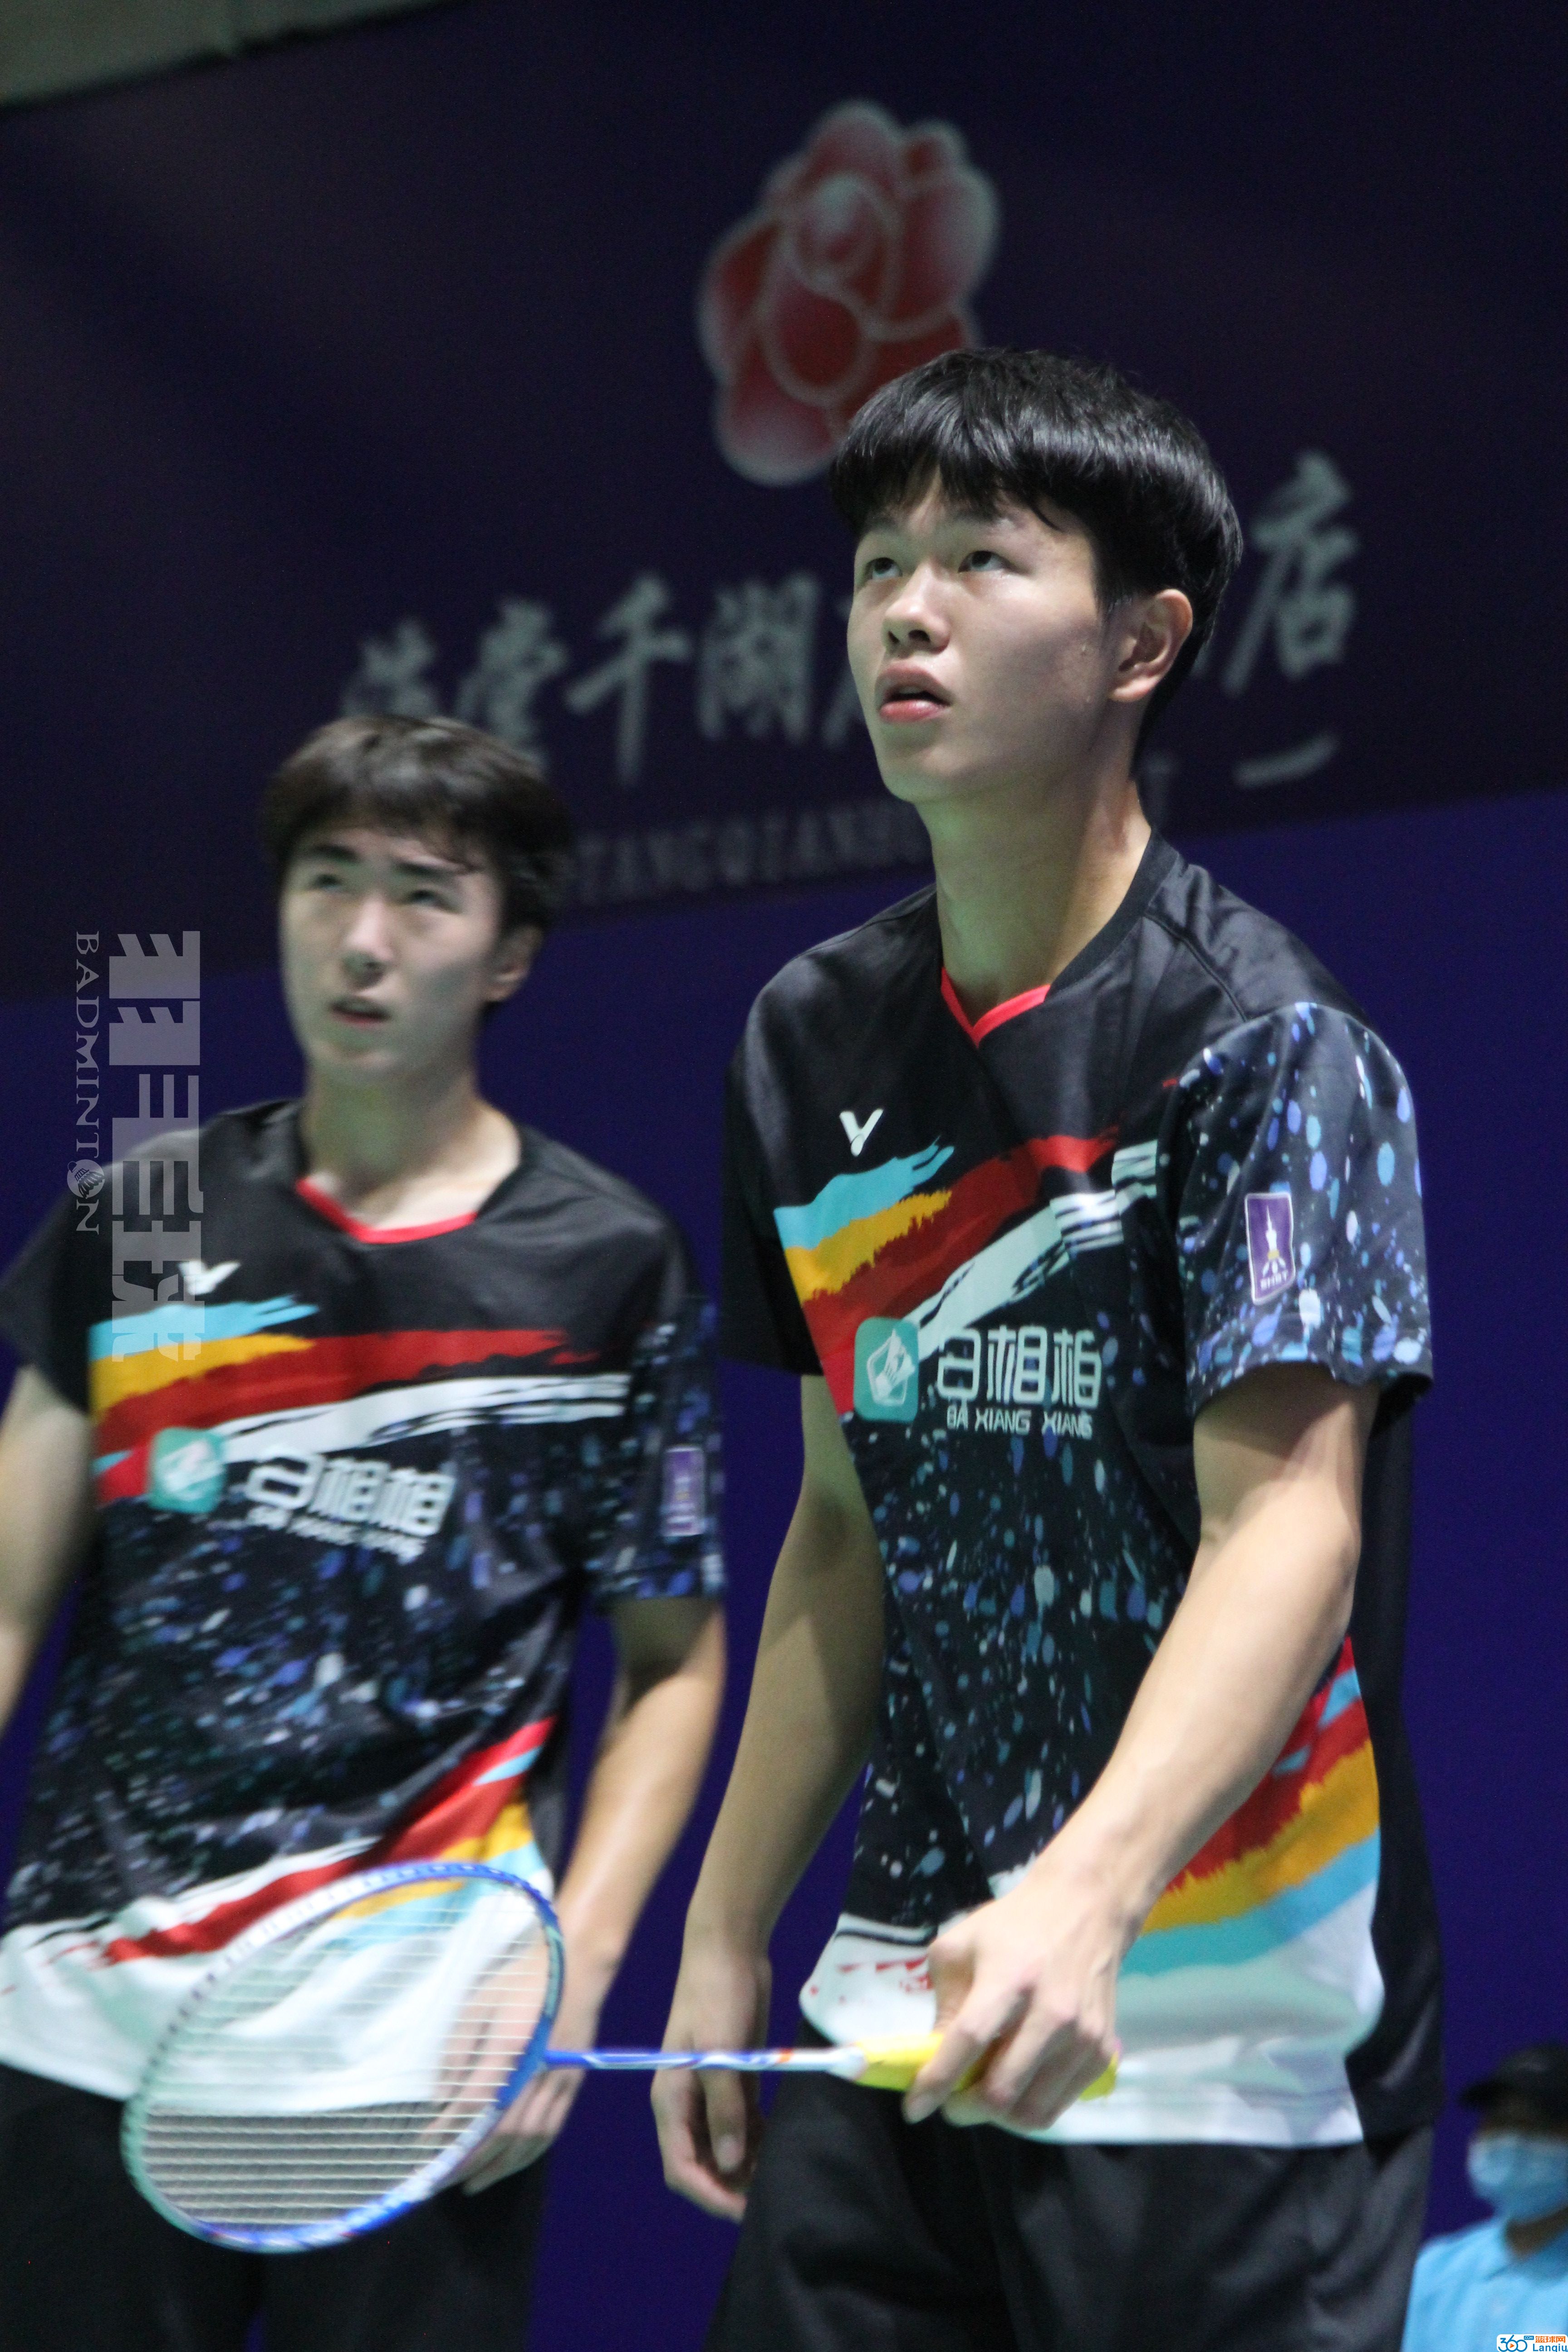 全国青年羽毛球锦标赛落下帷幕,北京辽宁旗鼓相当各取2金